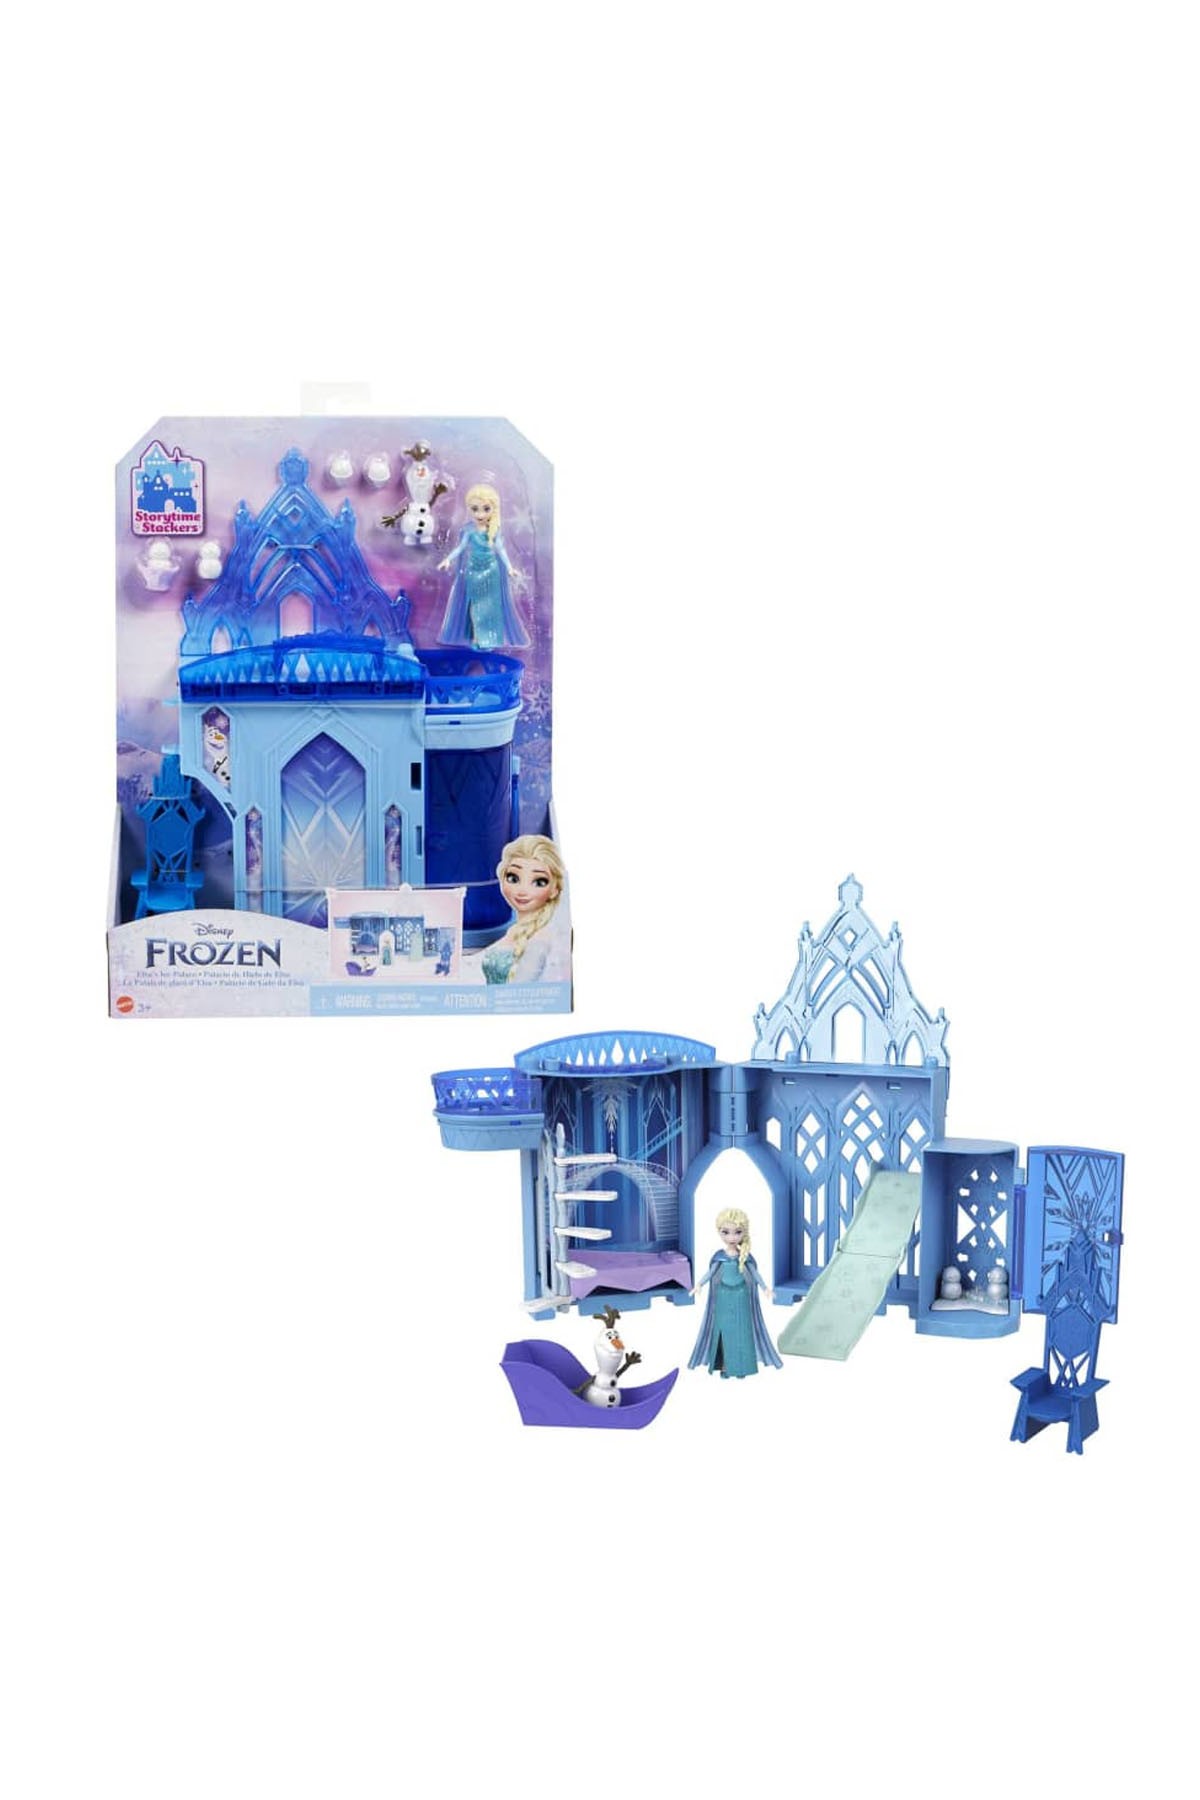 Frozen Disney Karlar Ülkesi Elsa ve Olaf'ın Şatosu Oyun Seti